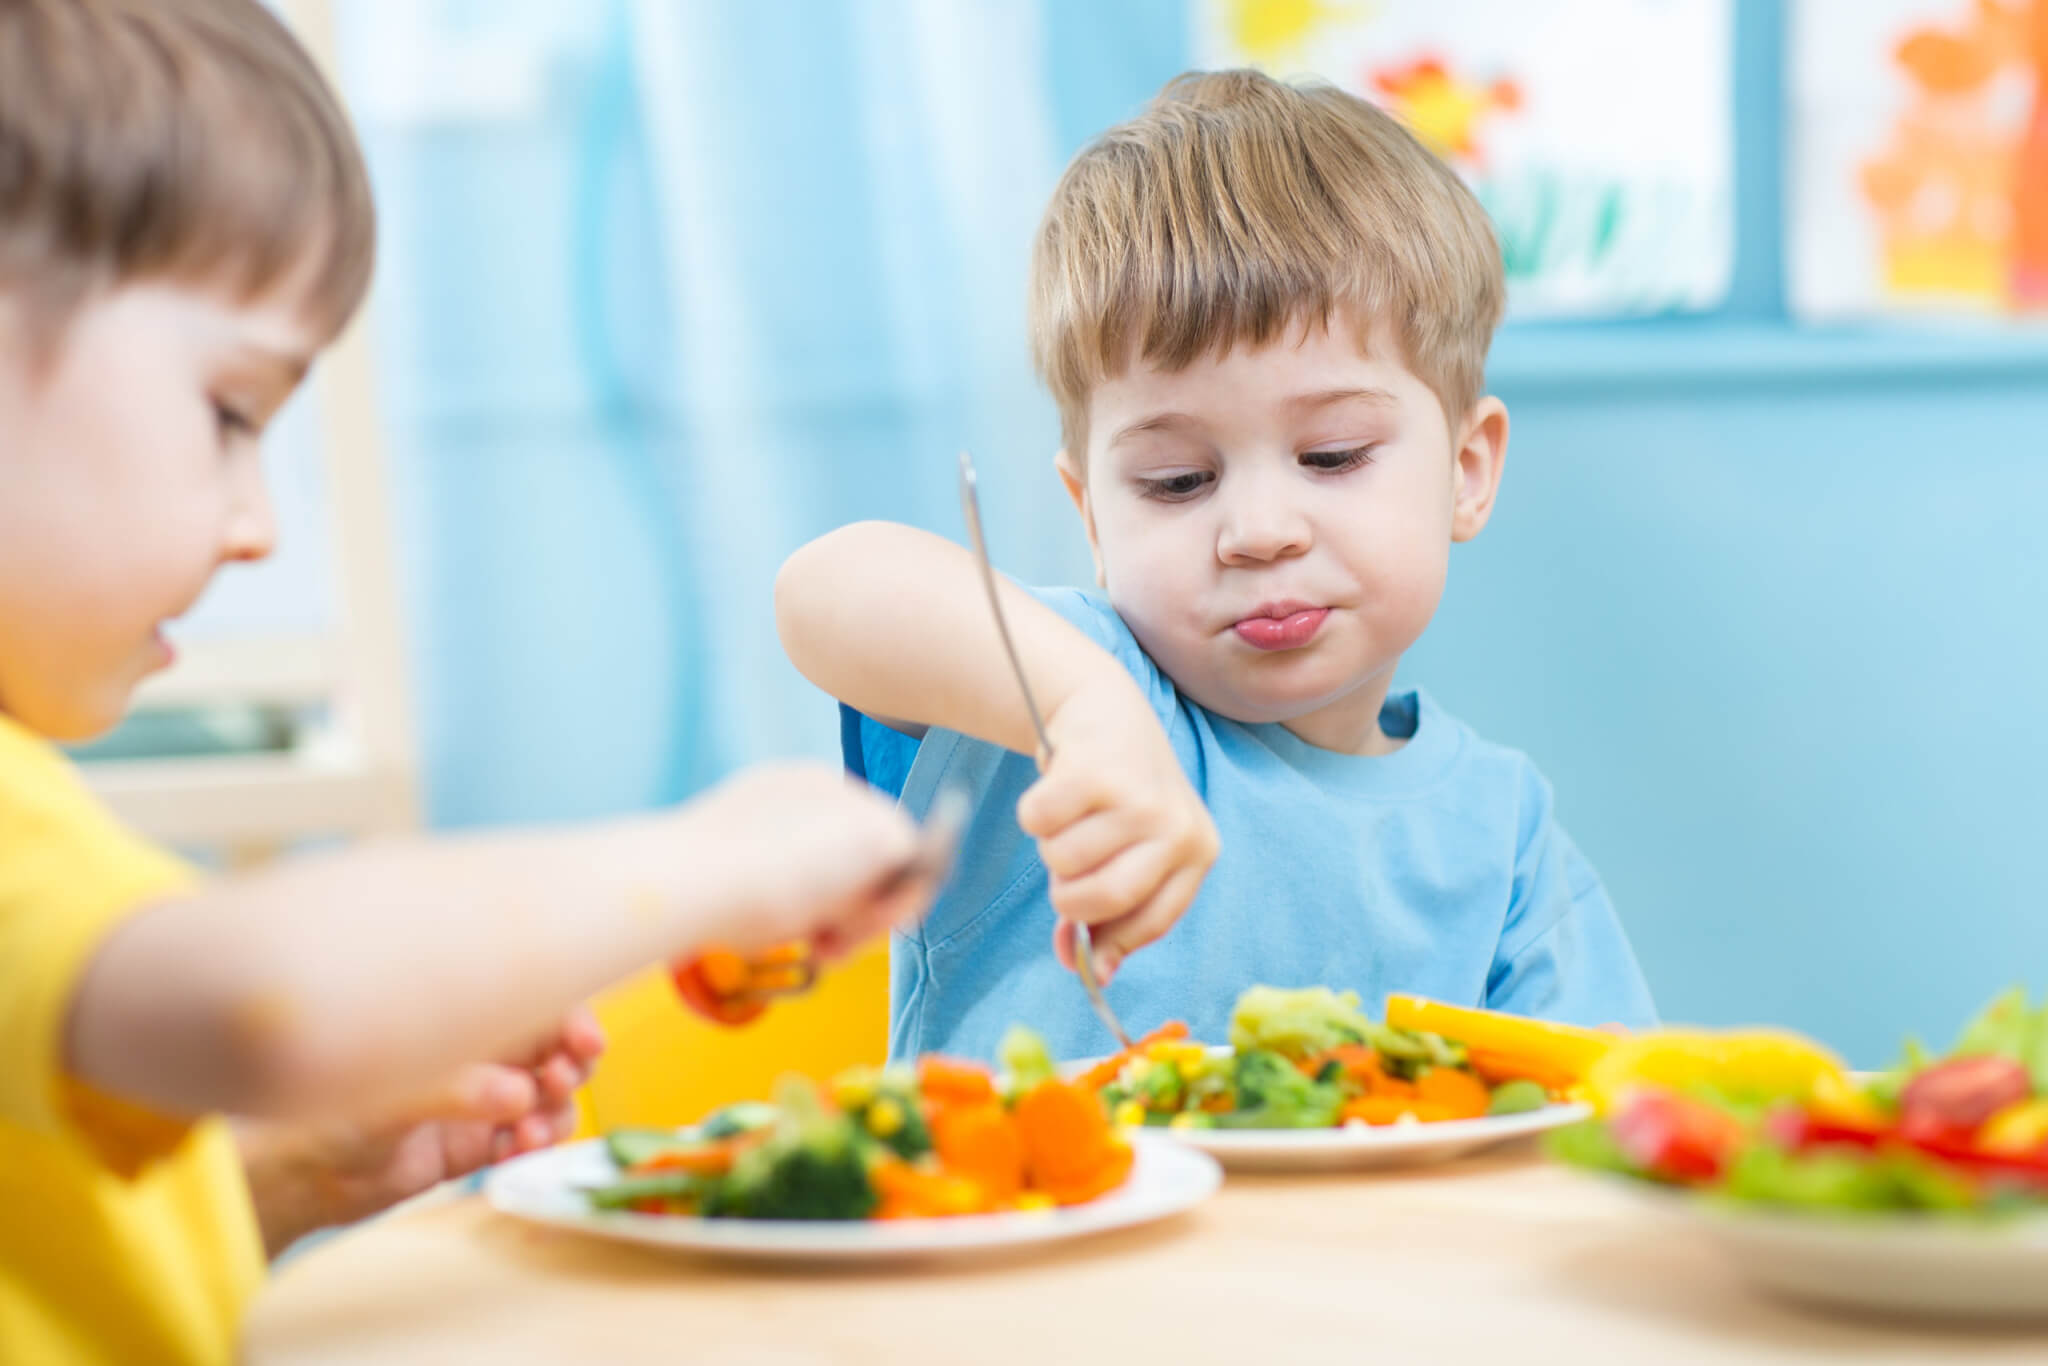 Children eating vegetables